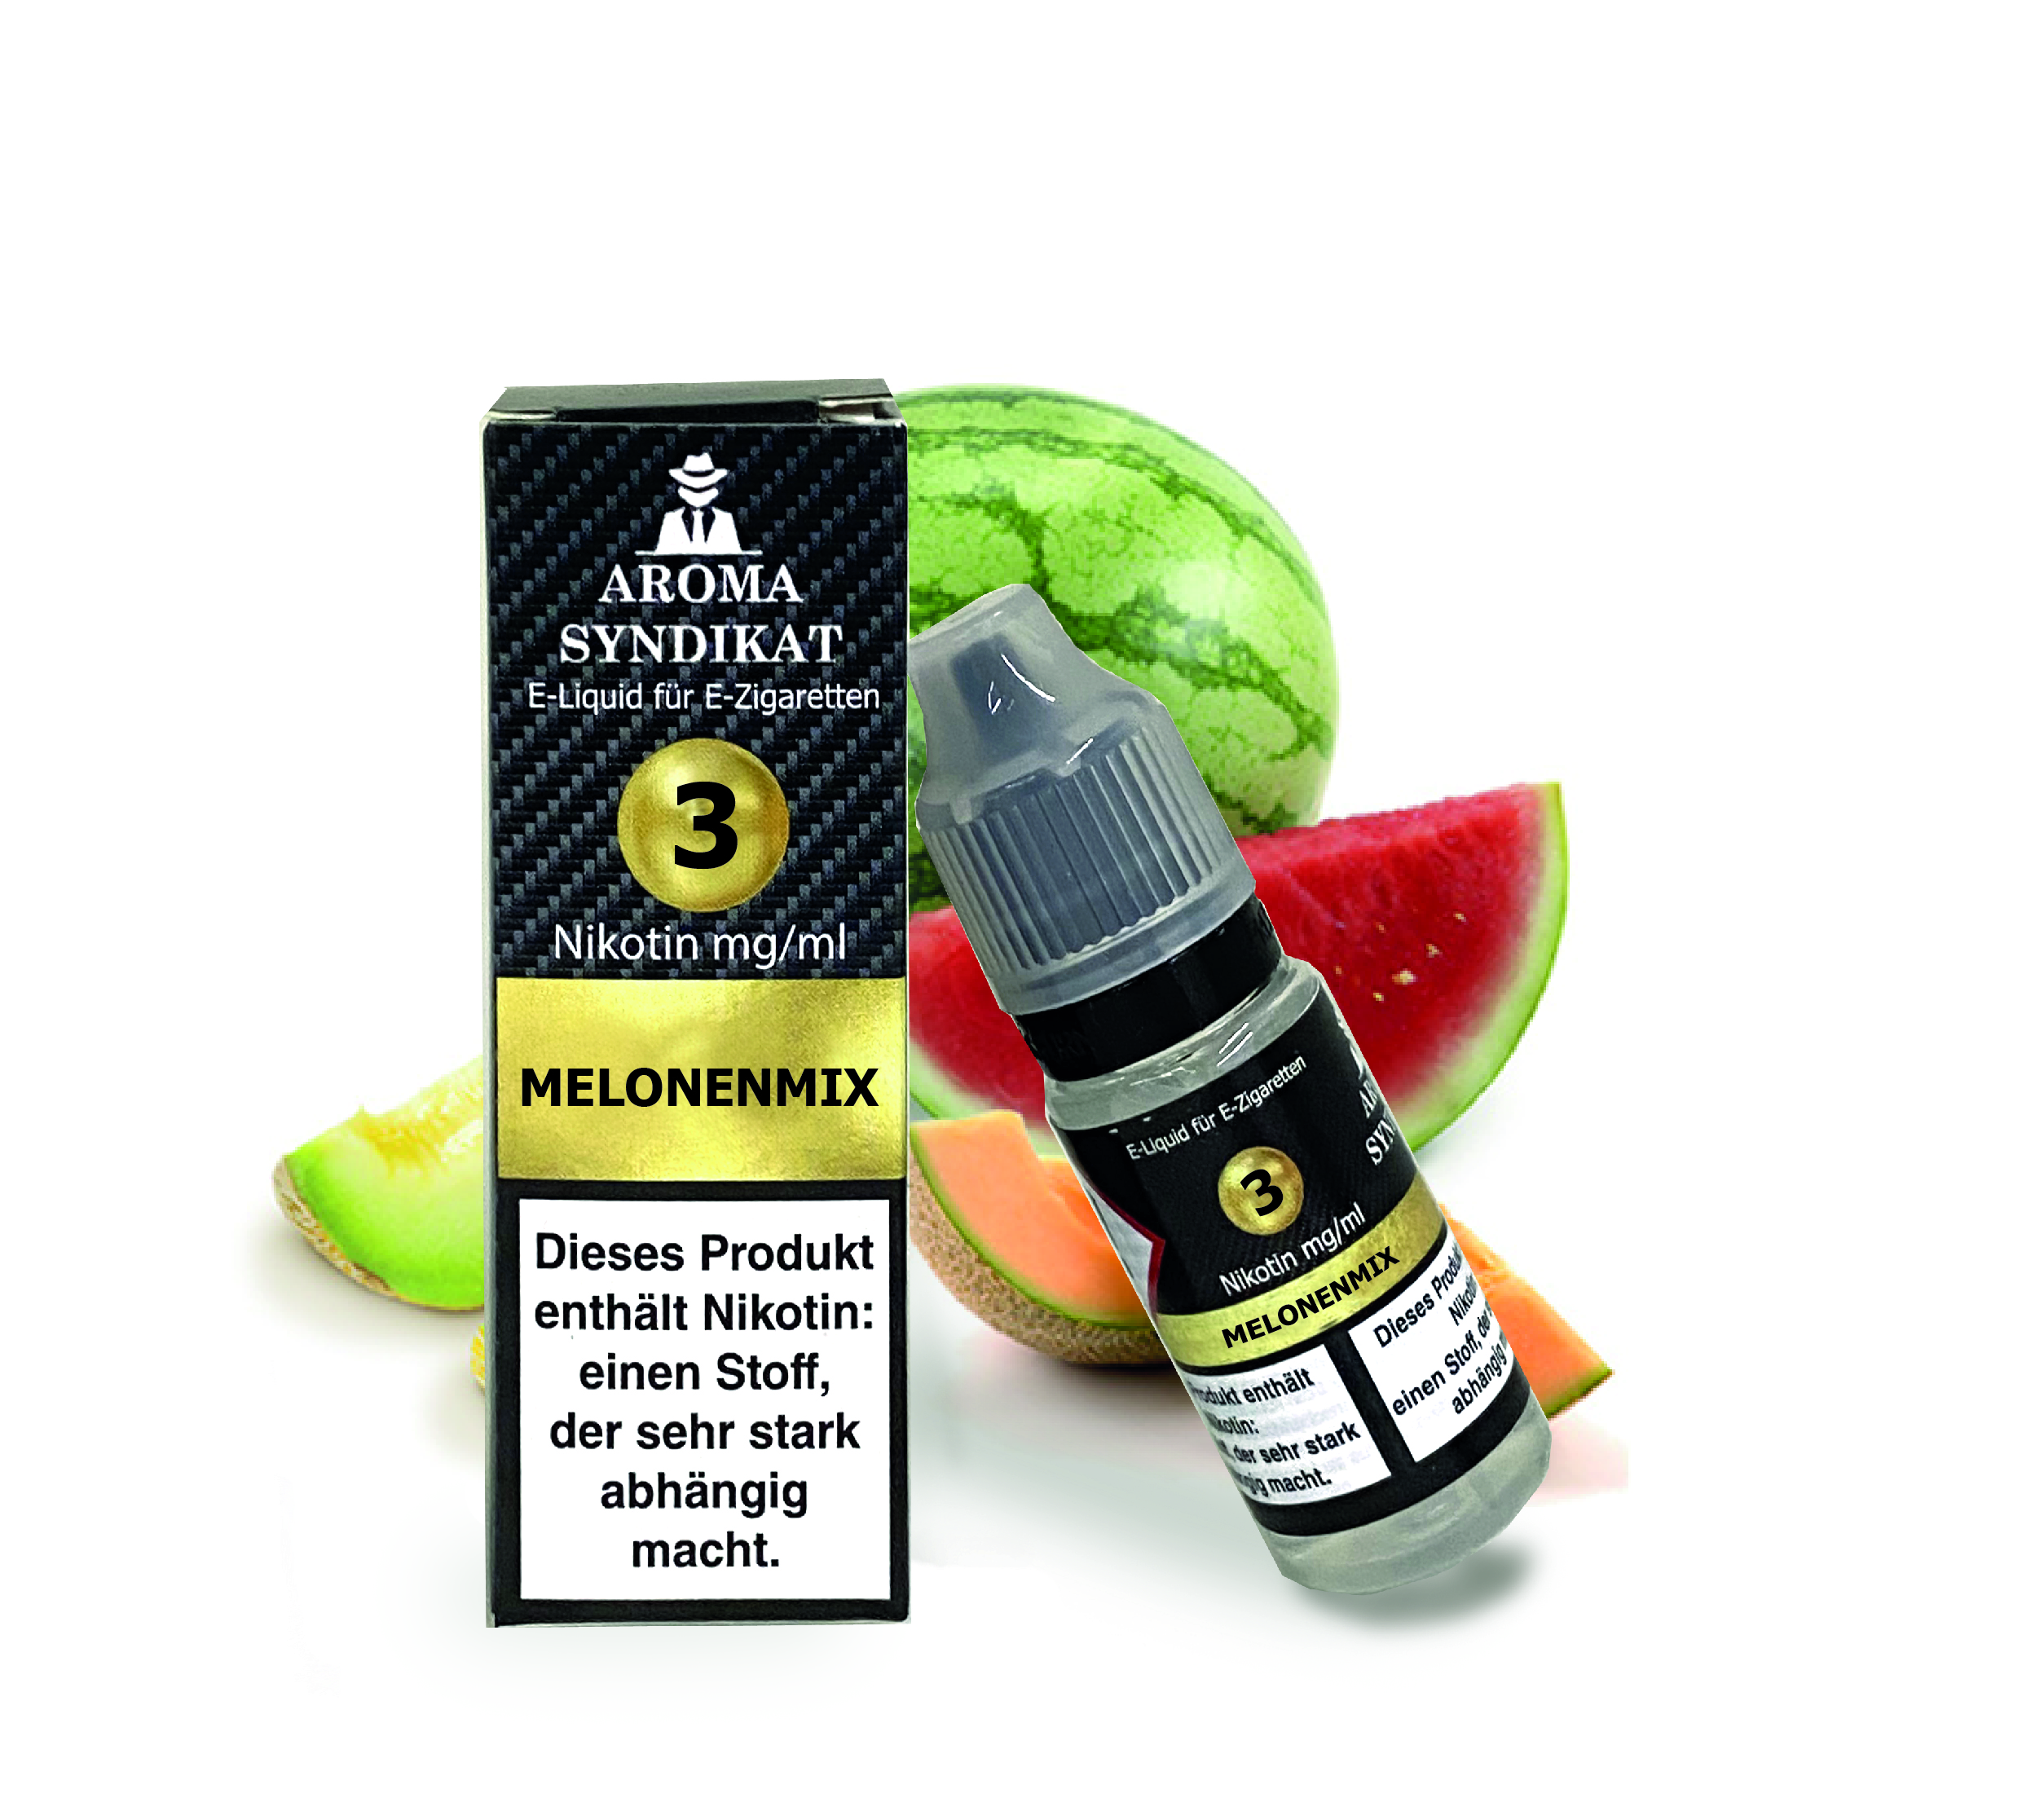 Aroma Syndikat - Melonenmix - E-liquid für E-Zigaretten